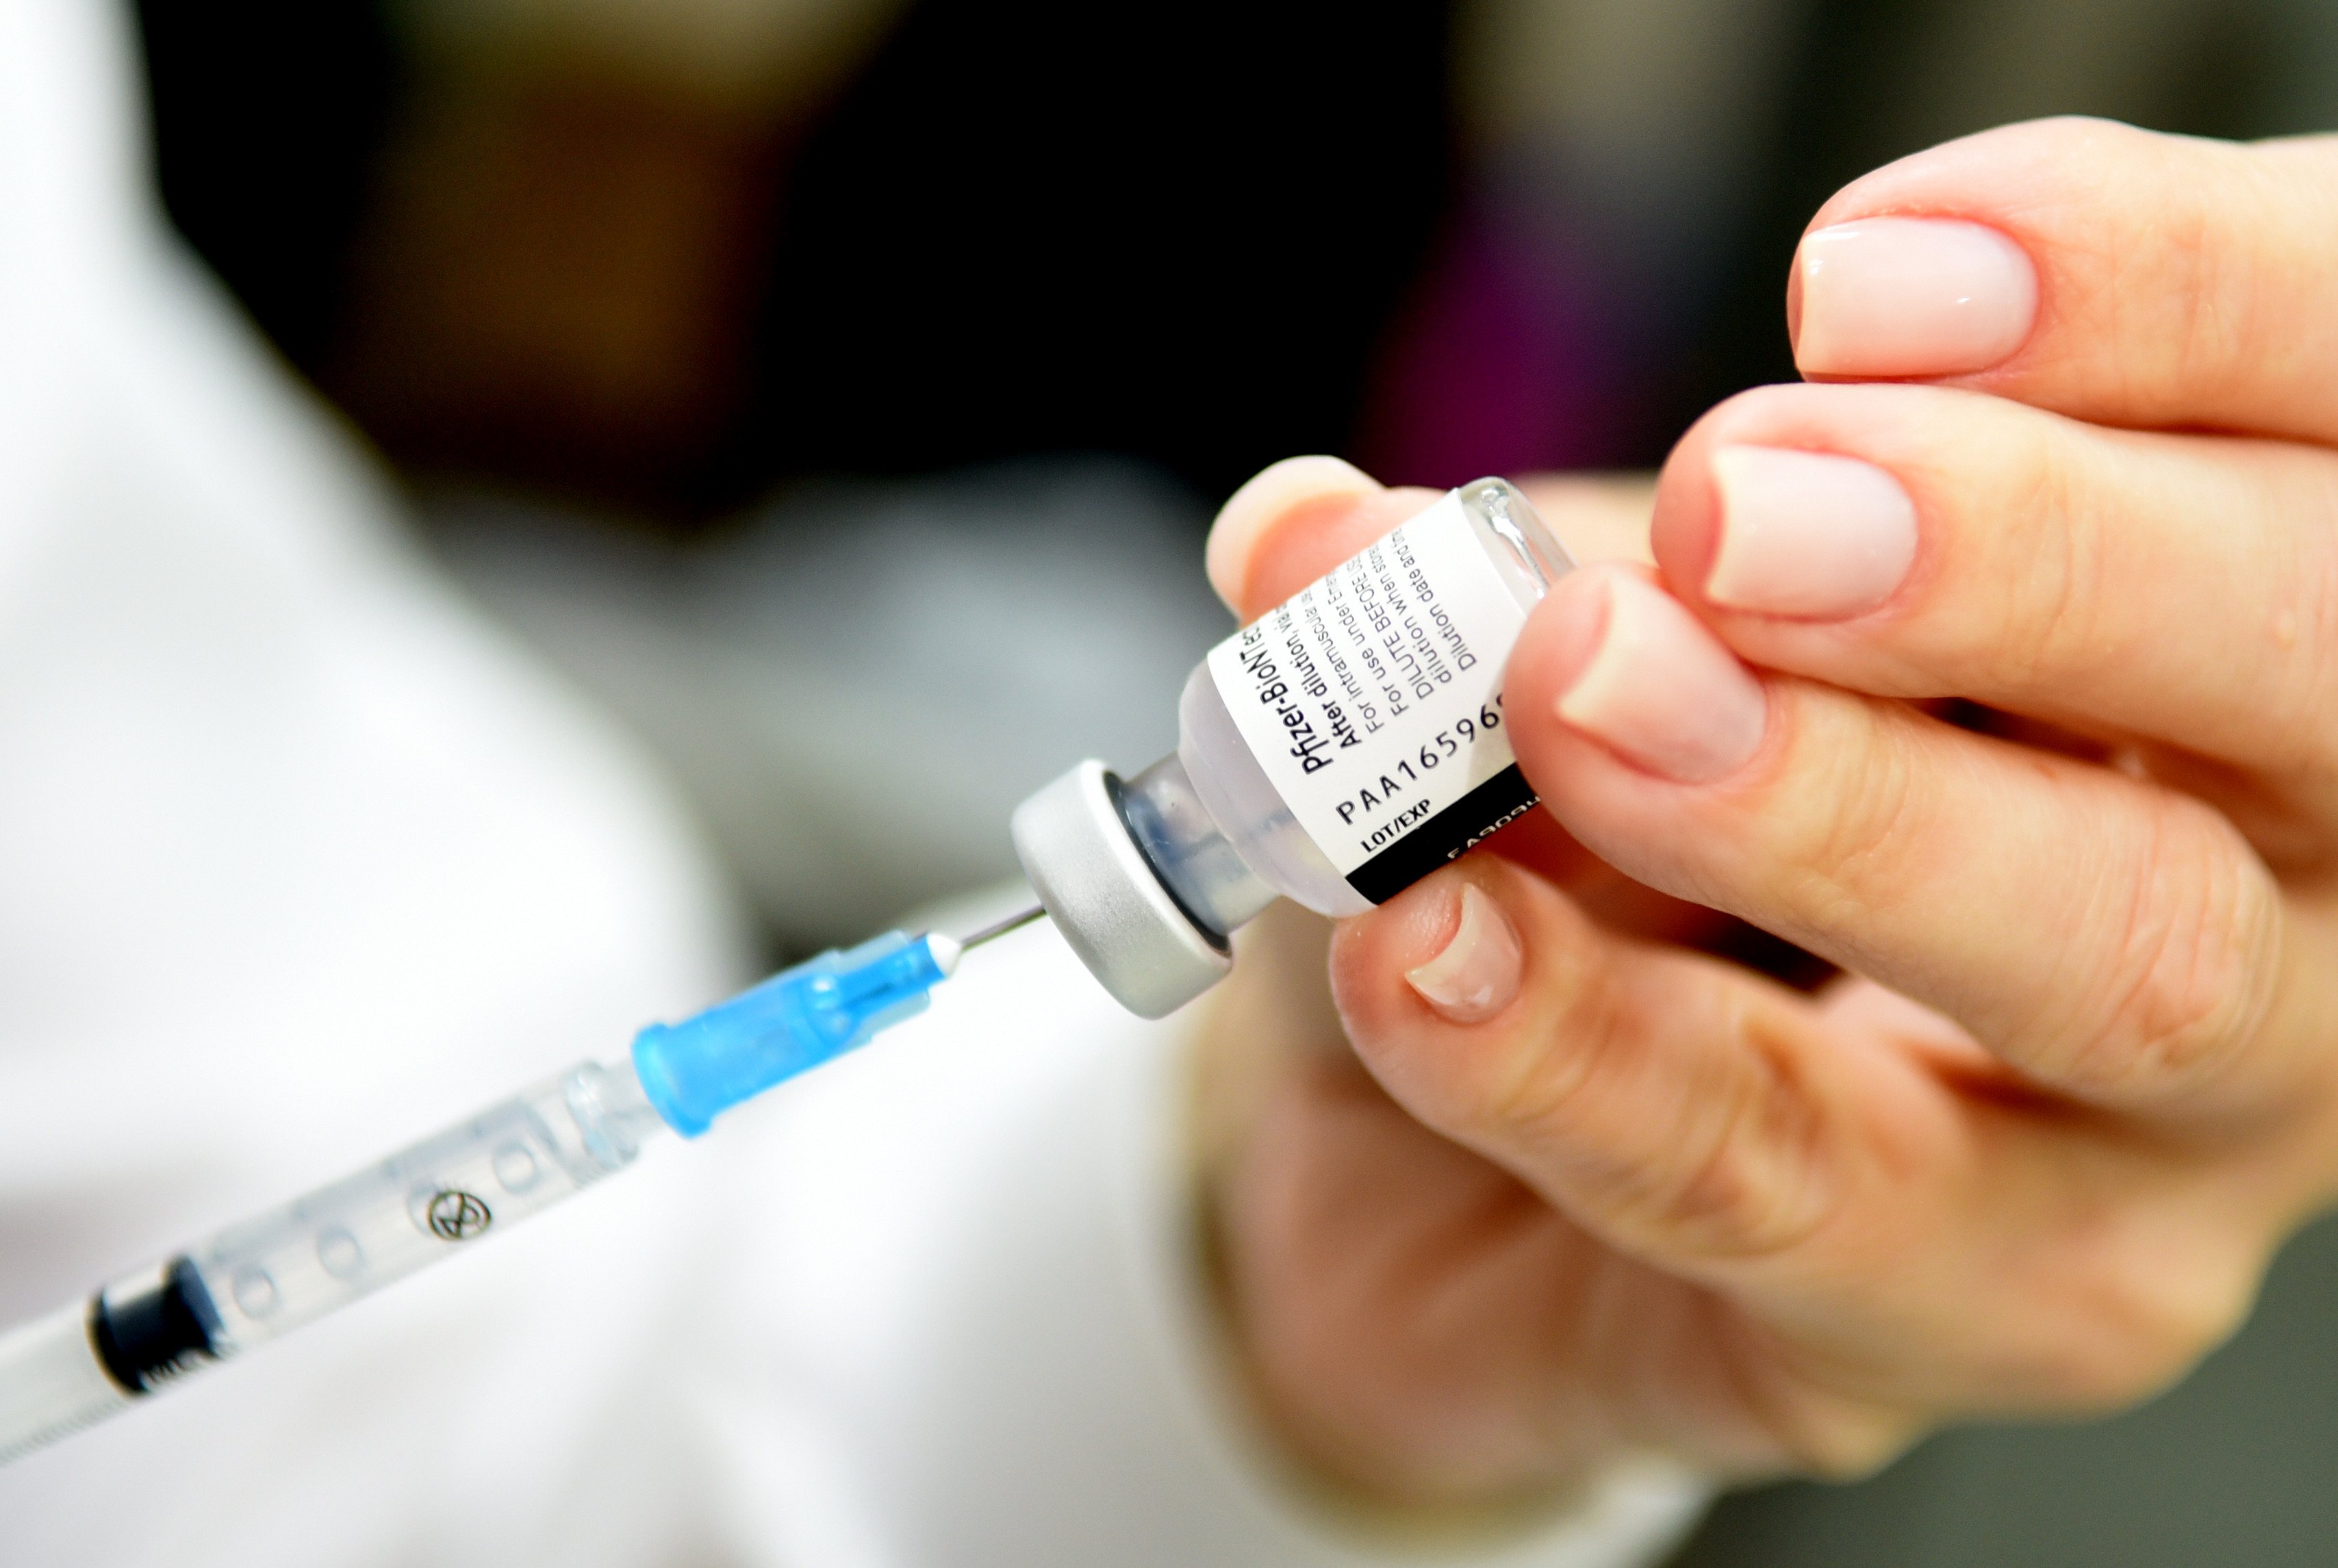 A farmacêutica está retirando sua vacina contra a Covid-19 em todo o mundo, segundo informação divulgada pelo jornal britânico The Telegraph